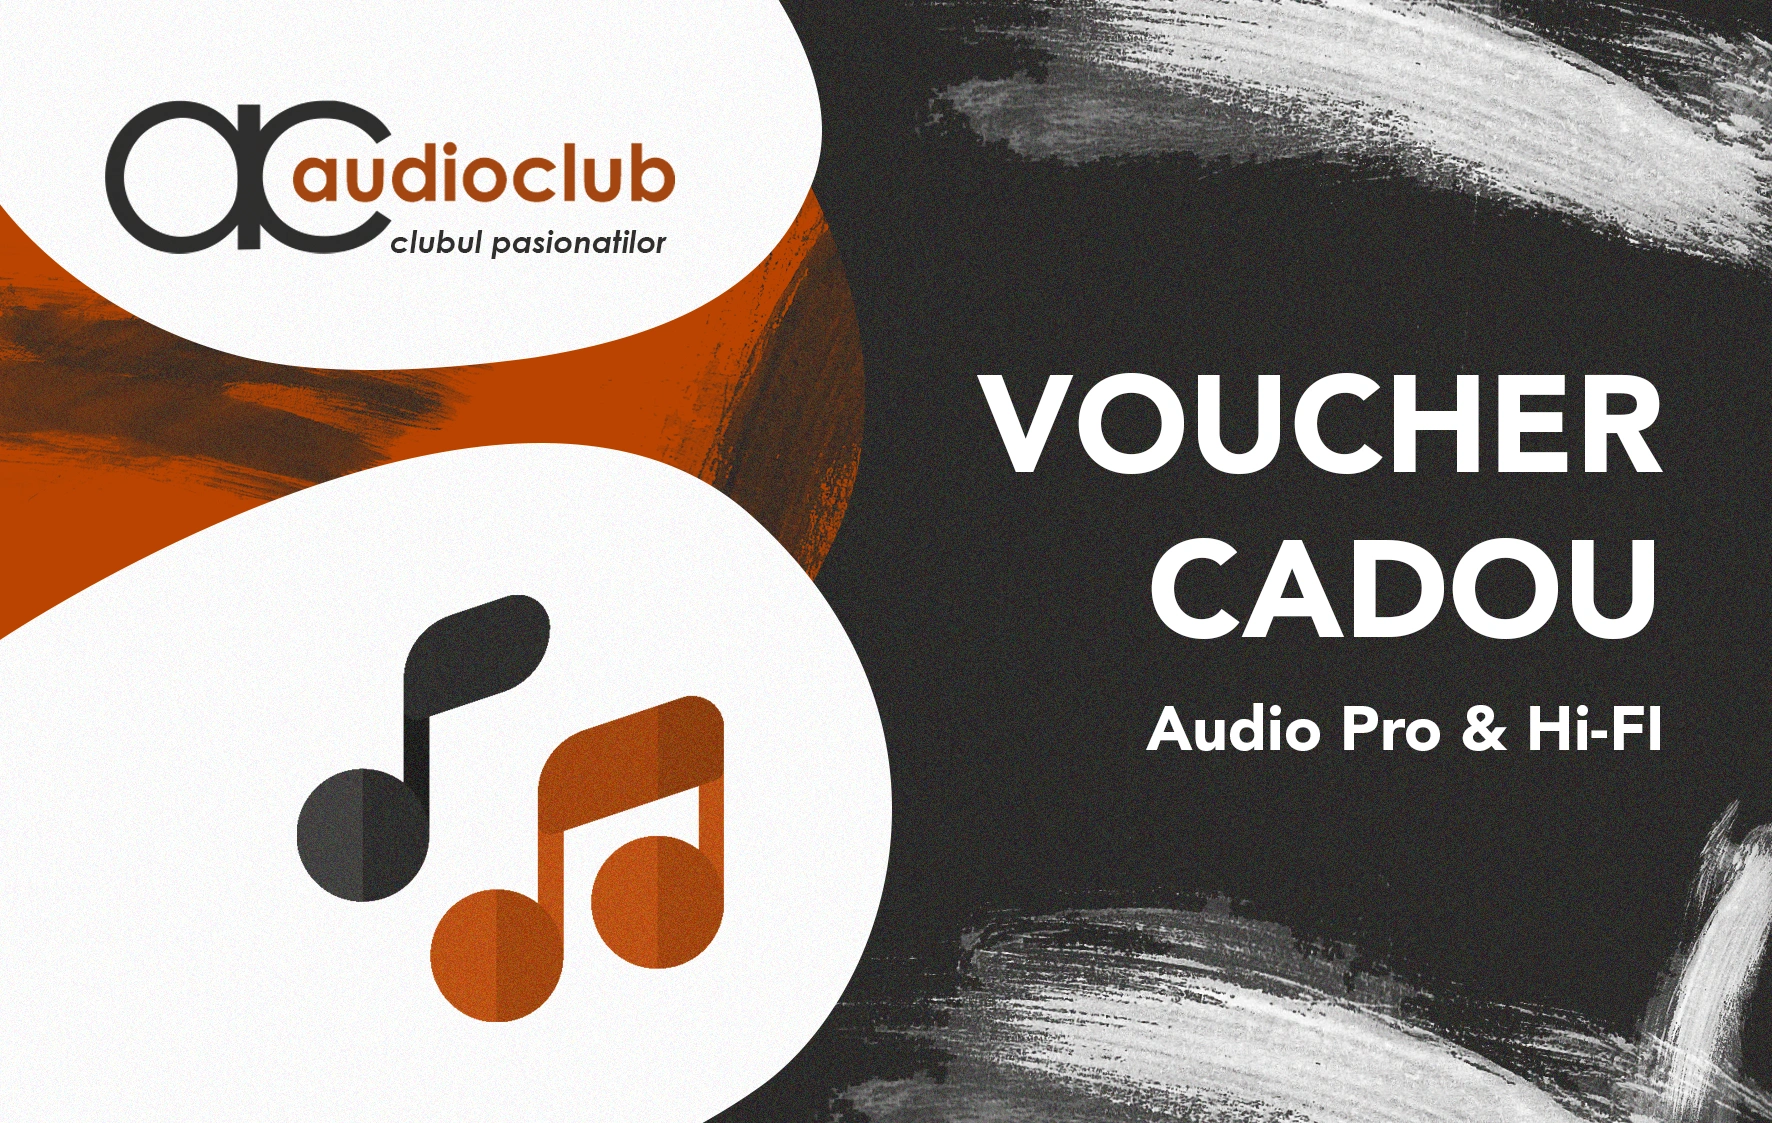 Carduri cadou & vouchere - Audioclub Voucher 500 Ron, audioclub.ro